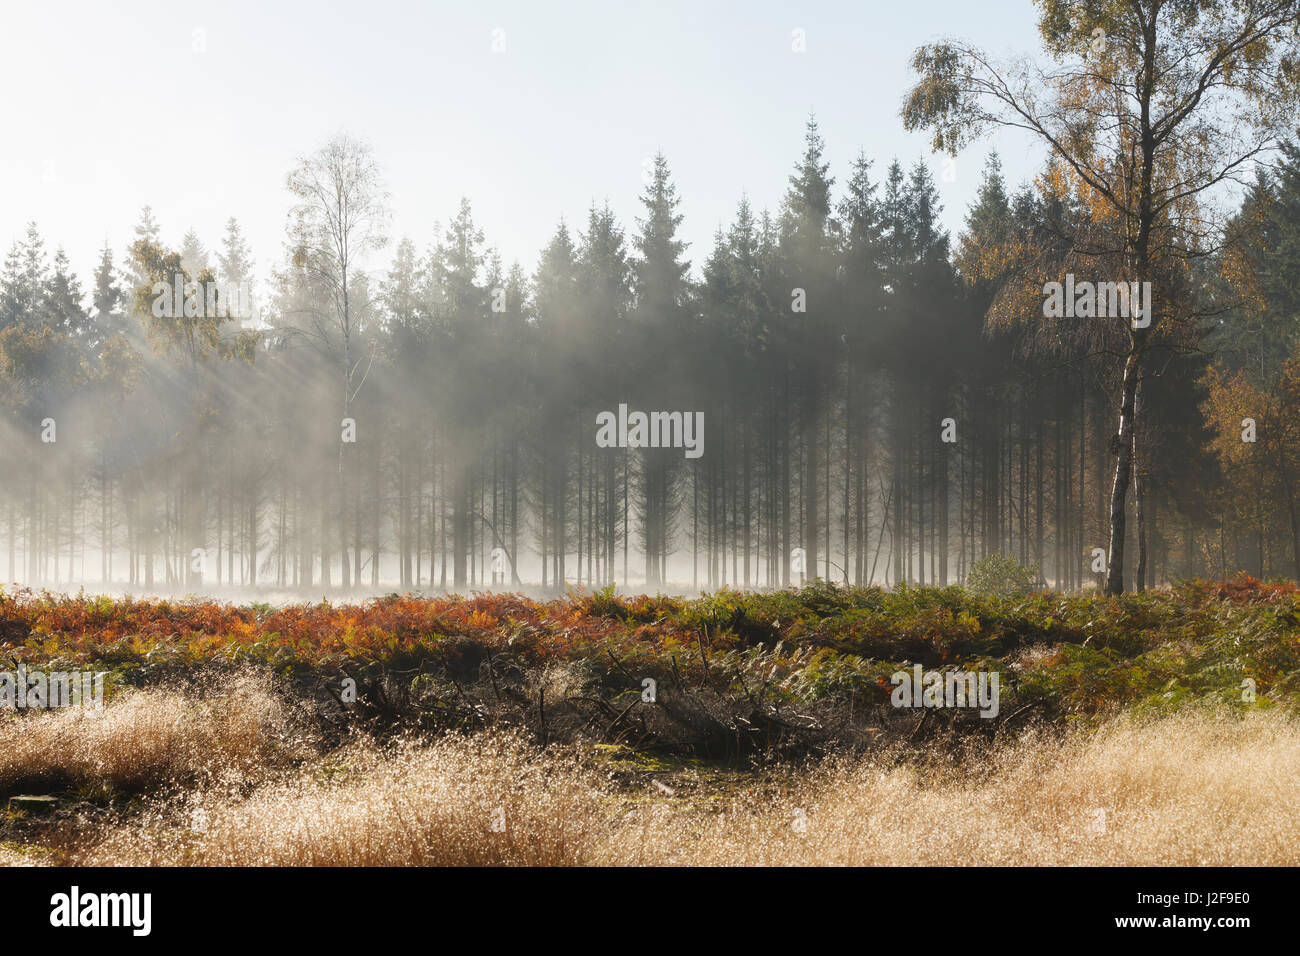 Strahlen im Nebel auf einer Lichtung im Wald mit Farnen in Herbstfarbe Stockfoto